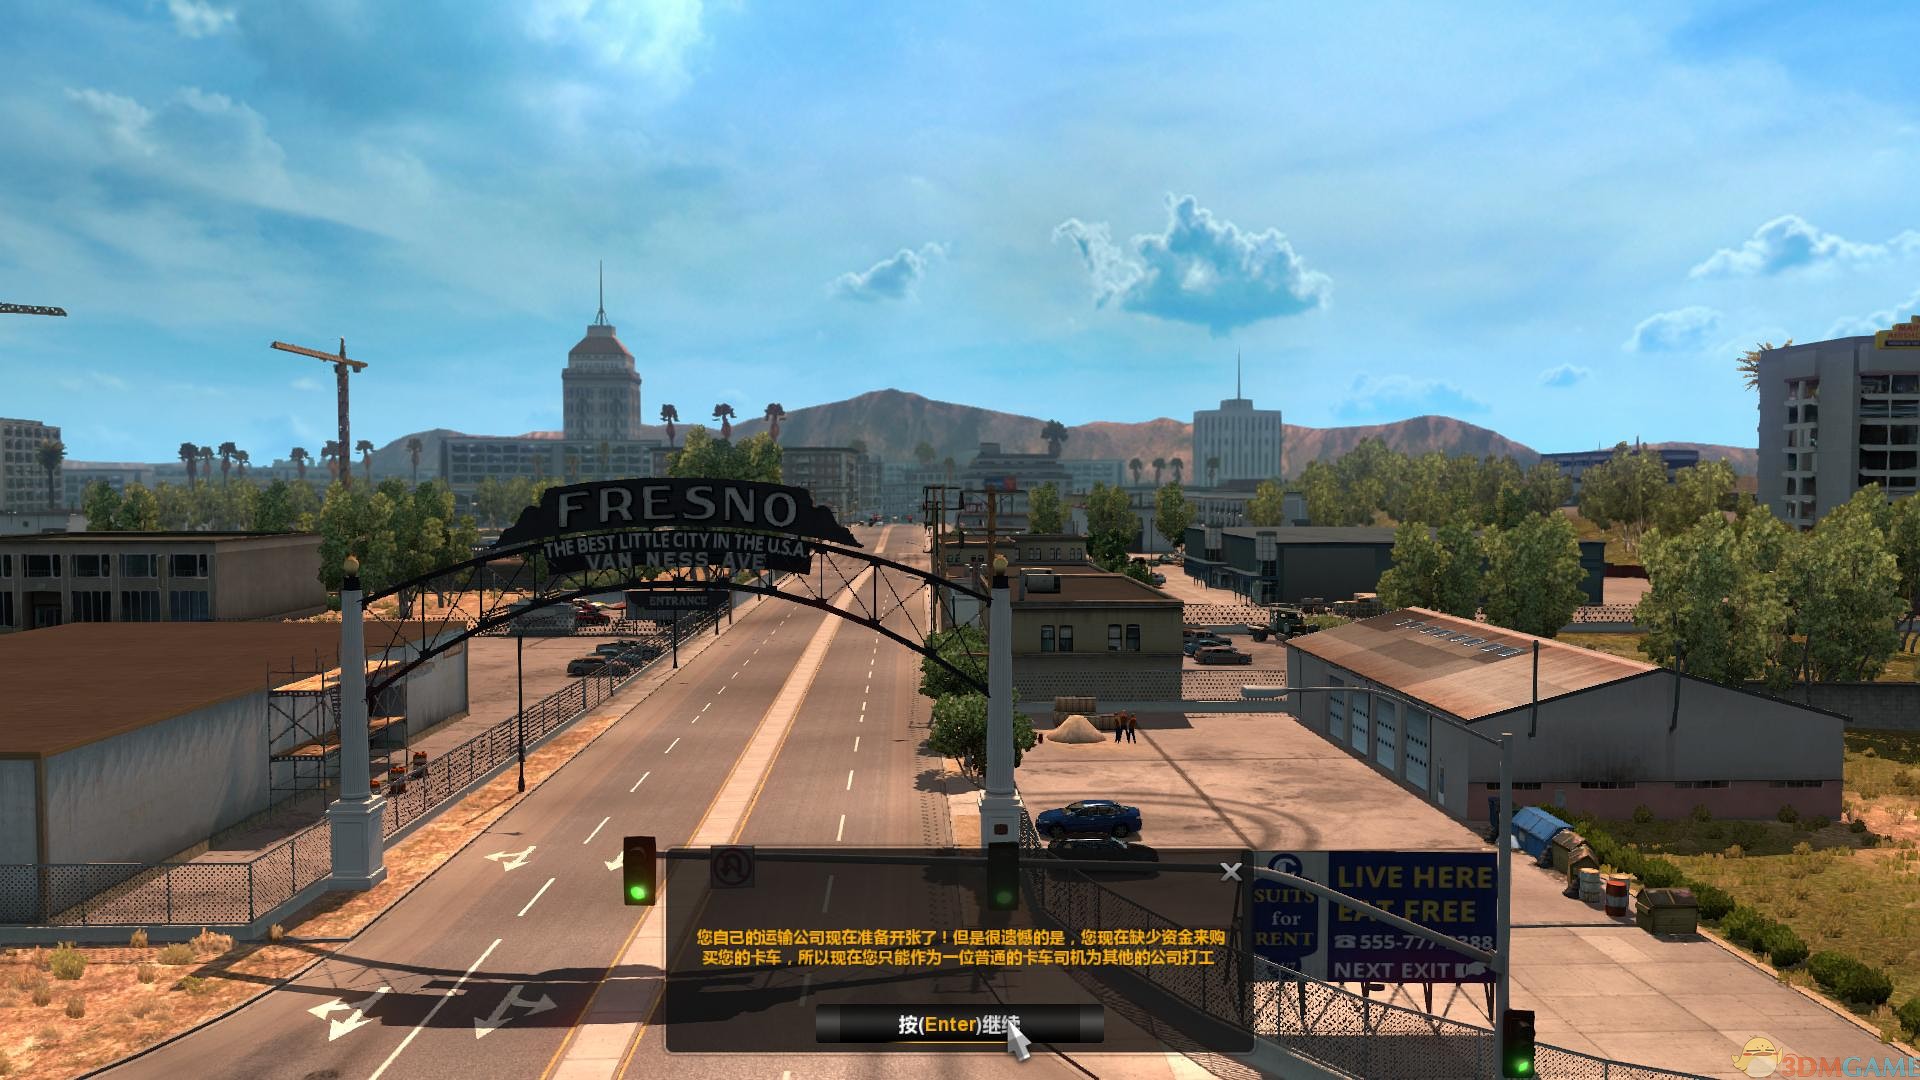 《美国卡车模拟/American Truck Simulator》v1.44.1.0s整合全DLC免安装中文版